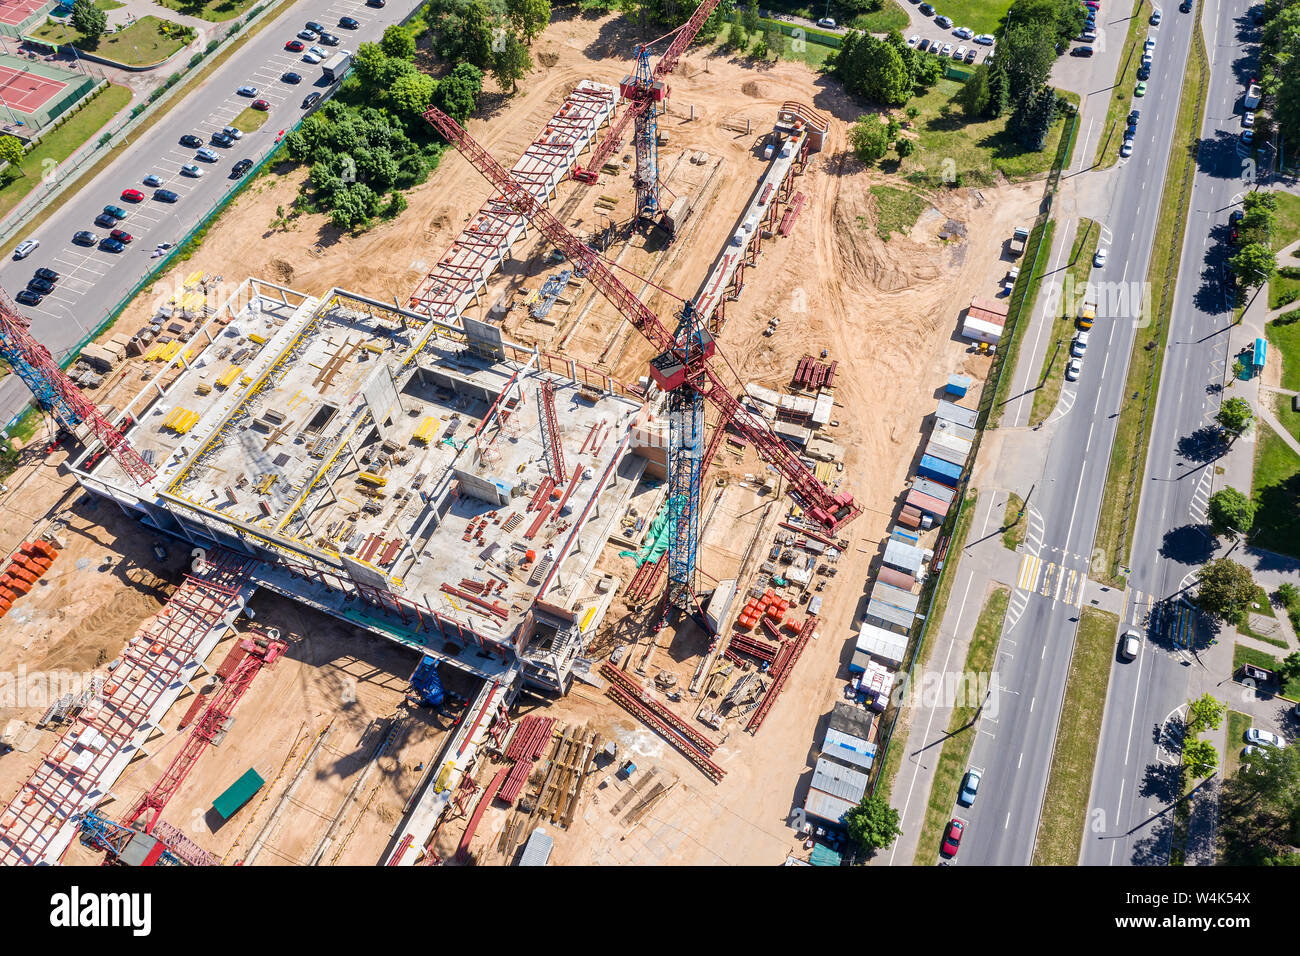 Immagine aerea della città sito in costruzione. sviluppo della nuova area residenziale. drone fotografia Foto Stock